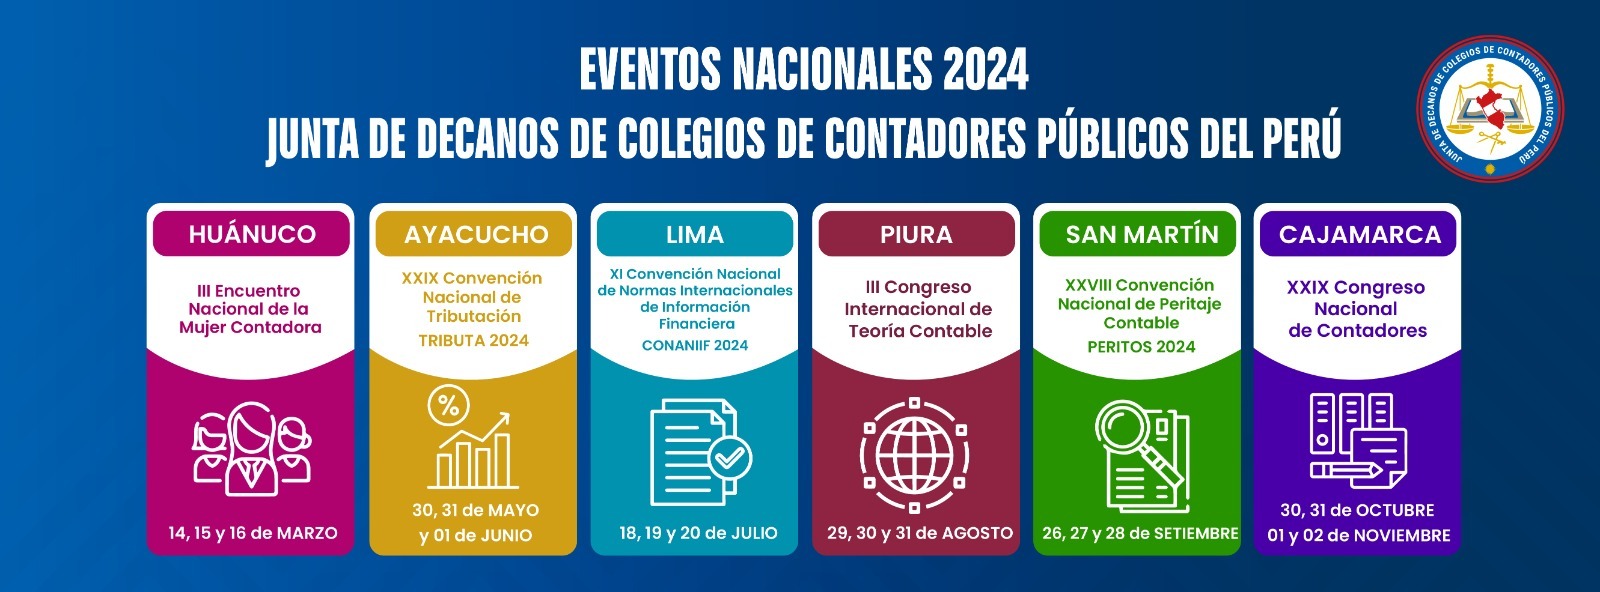 Convenciones Nacionales 2024